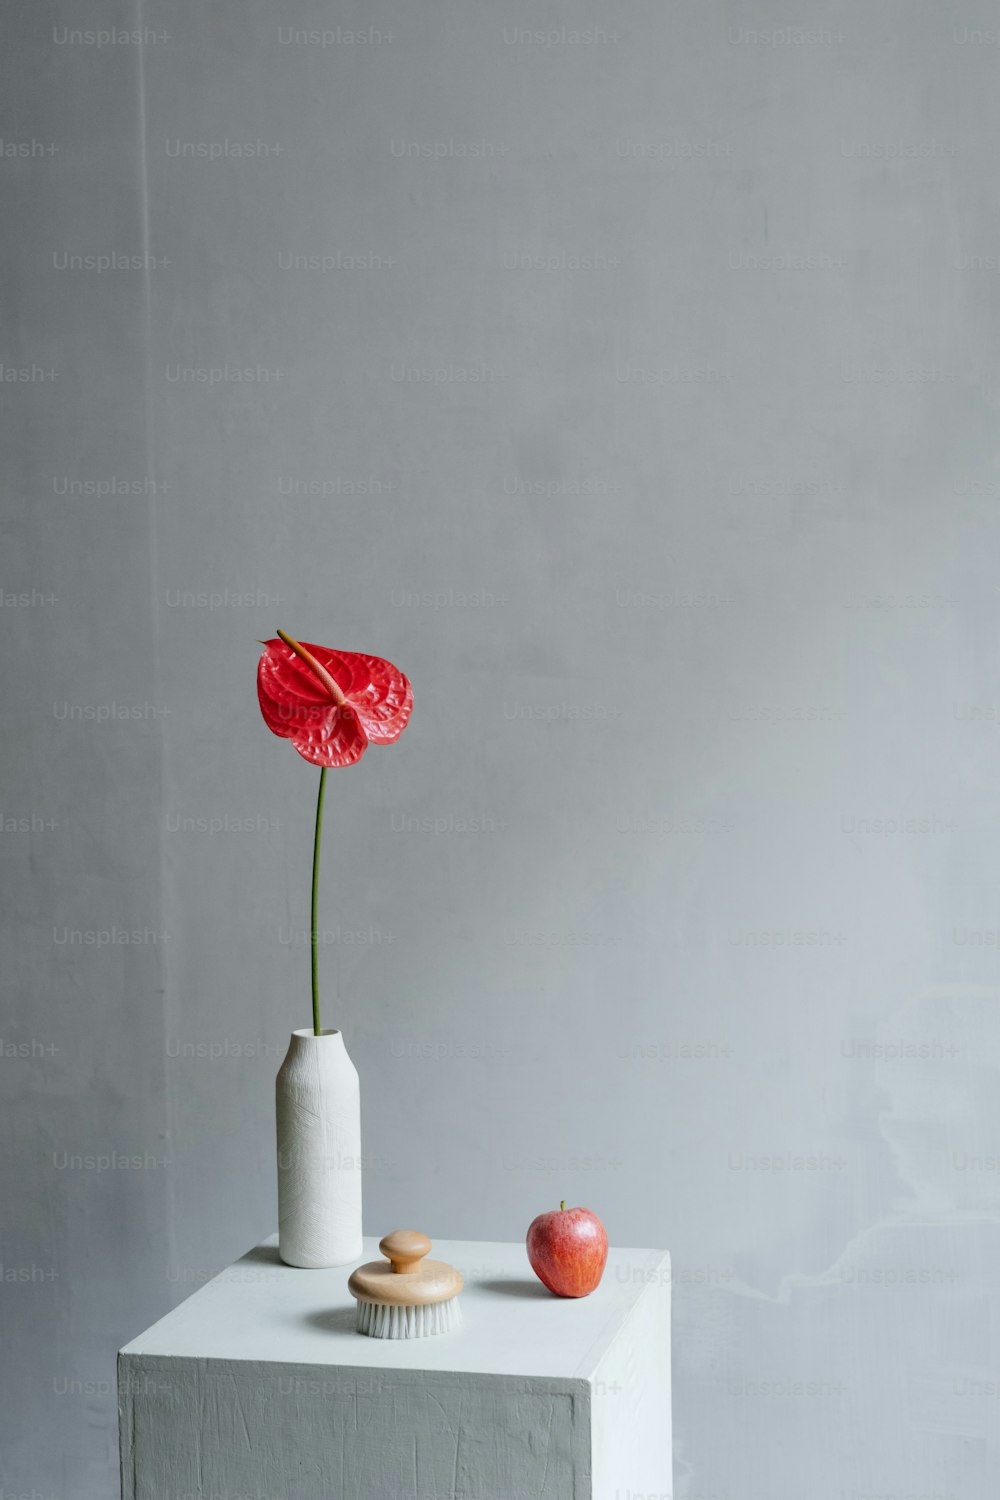 um vaso branco com uma flor vermelha nele